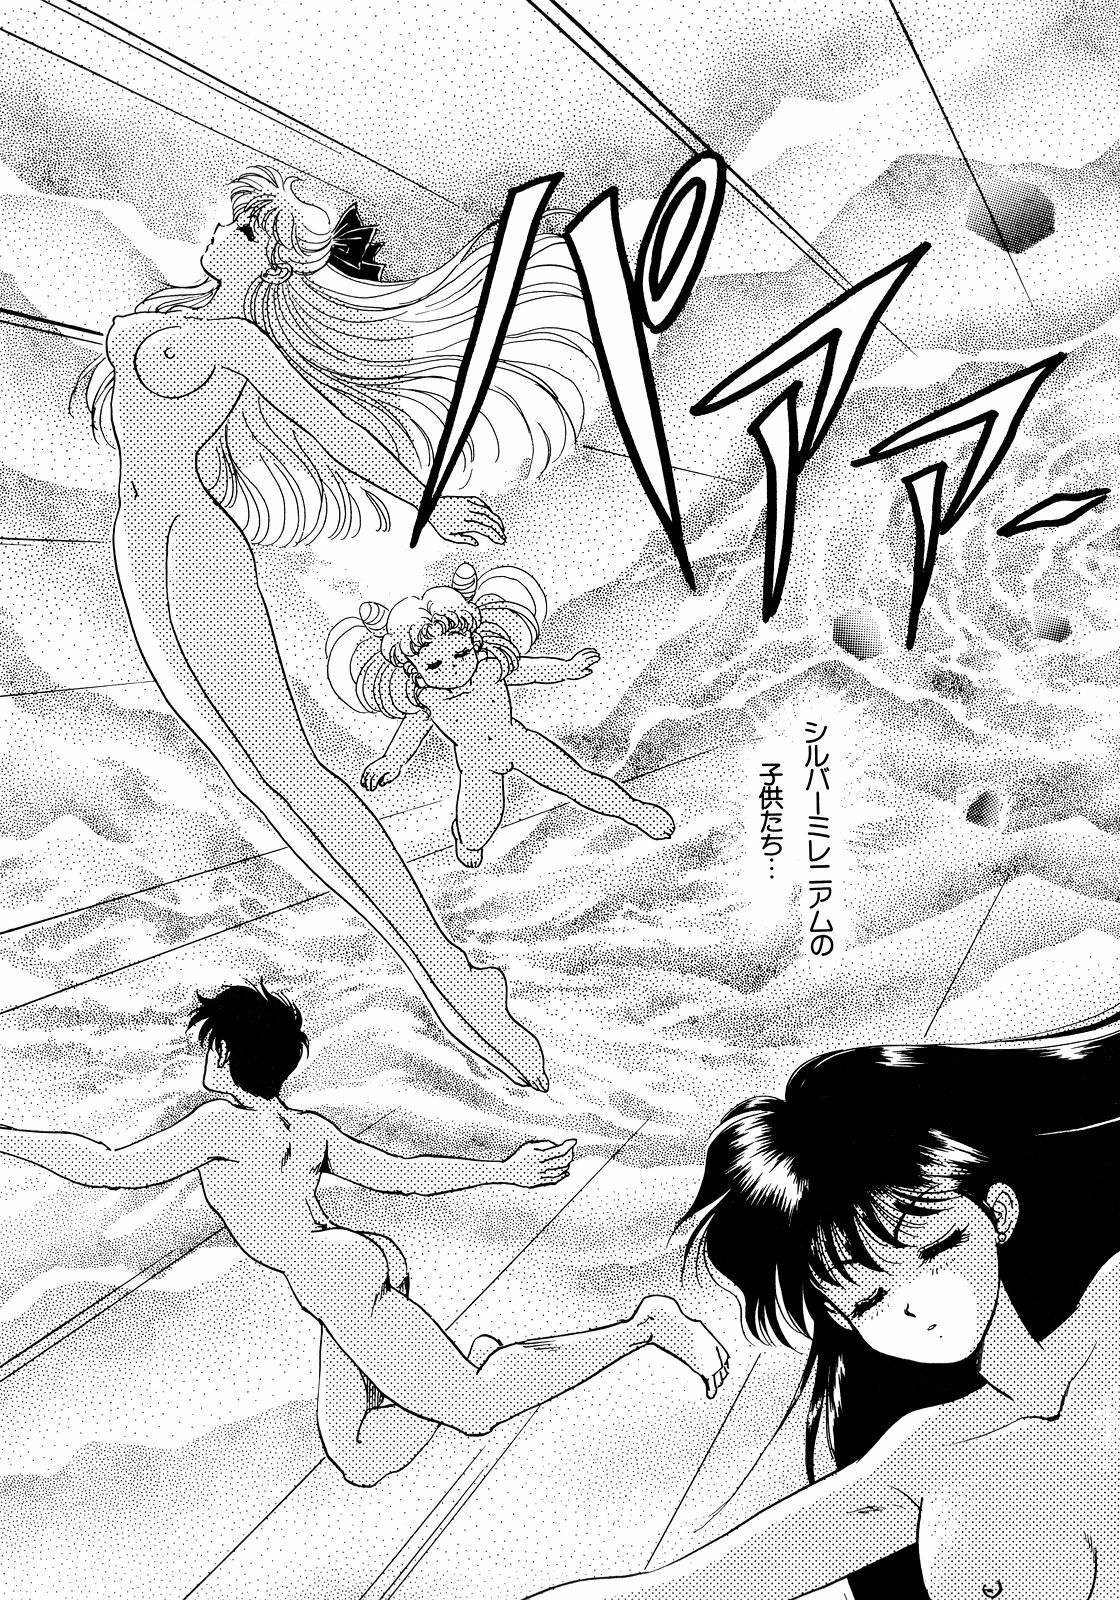 [Anthology] Lunatic Party 5 (Bishoujo Senshi Sailor Moon) page 8 full